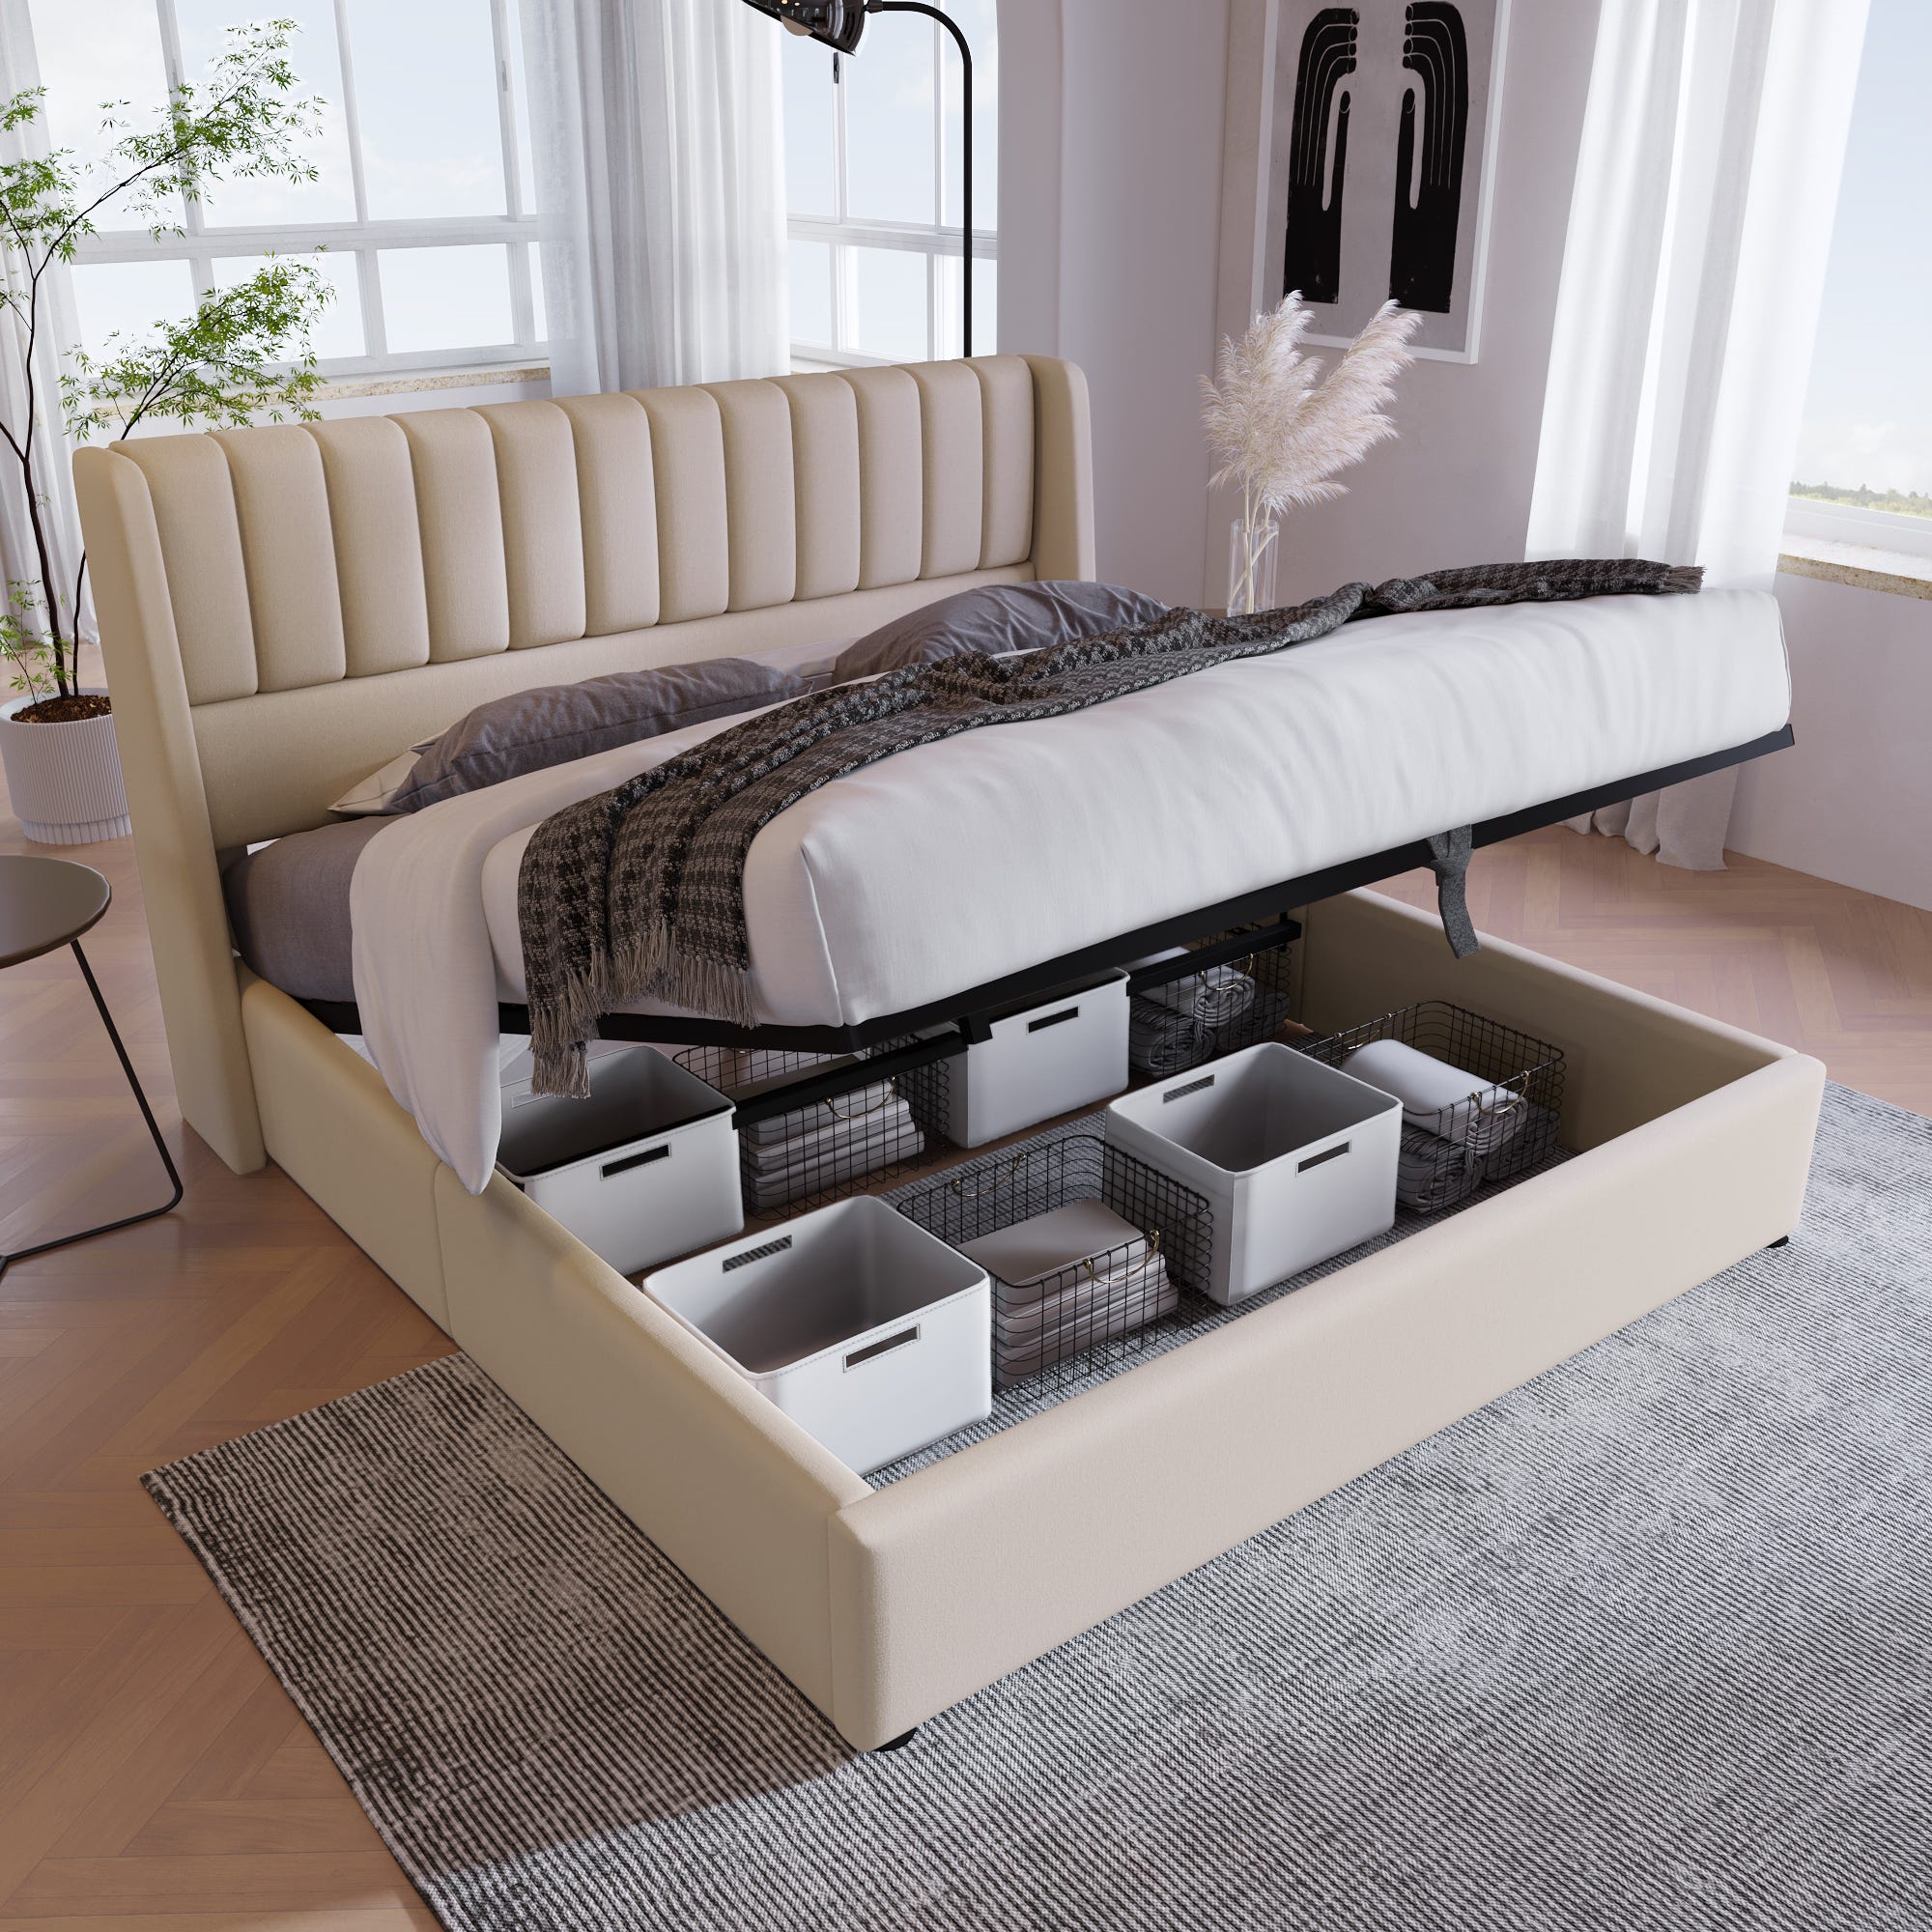 Cama con almacenamiento y somier hidráulico, cama doble 160x200cm, somier  de madera, cama con estructura de somier de metal, lino, beige.